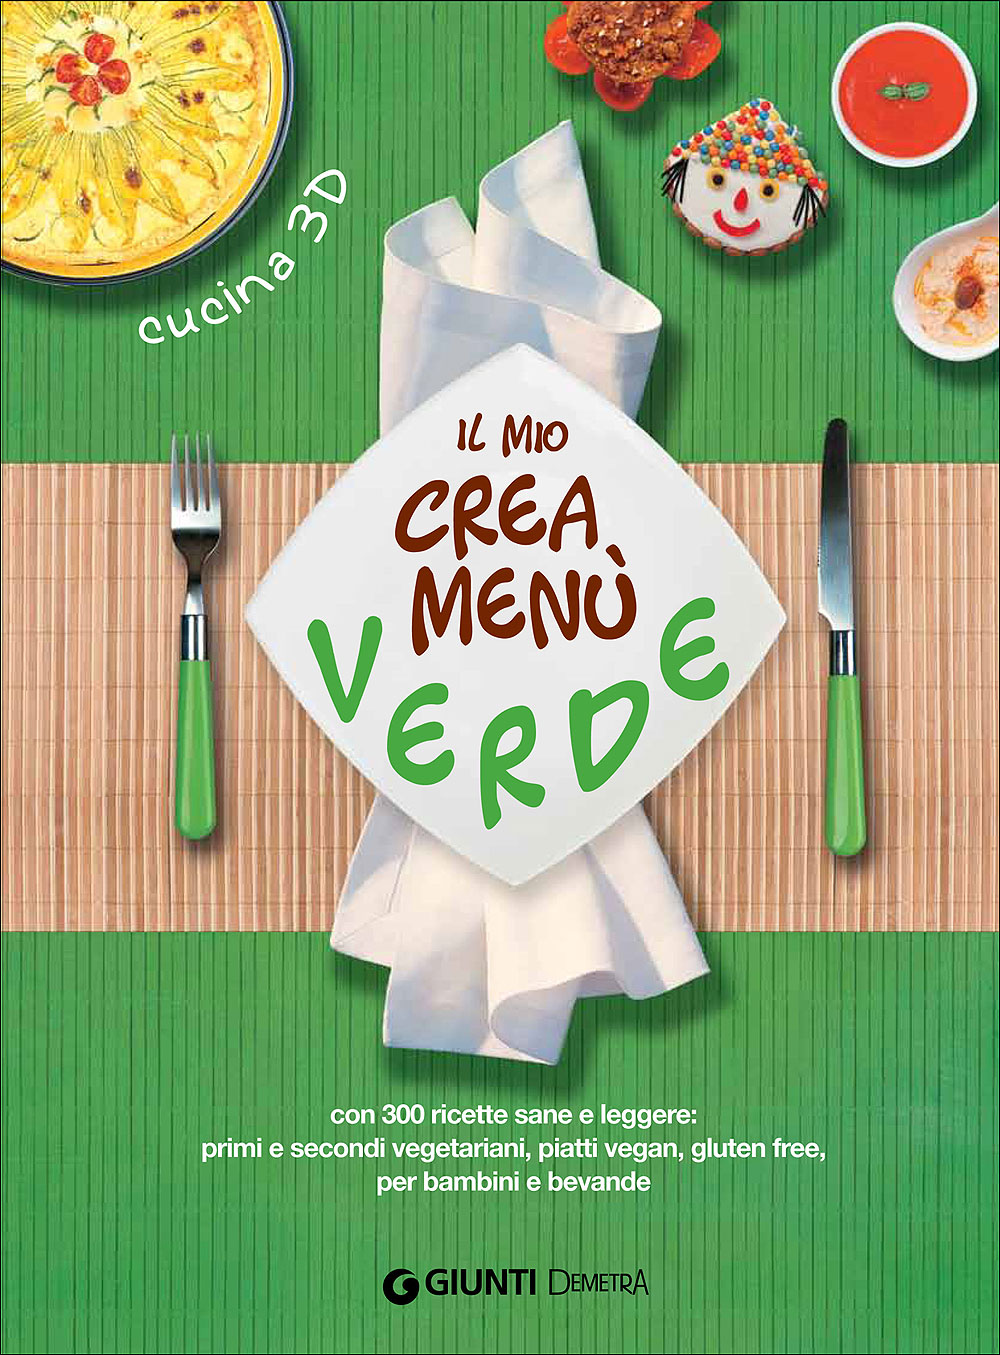 Il mio crea menù verde::Con 300 ricette sane e leggere: primi e secondi vegetariani, piatti vegan, gluten free,per bambini e bevande